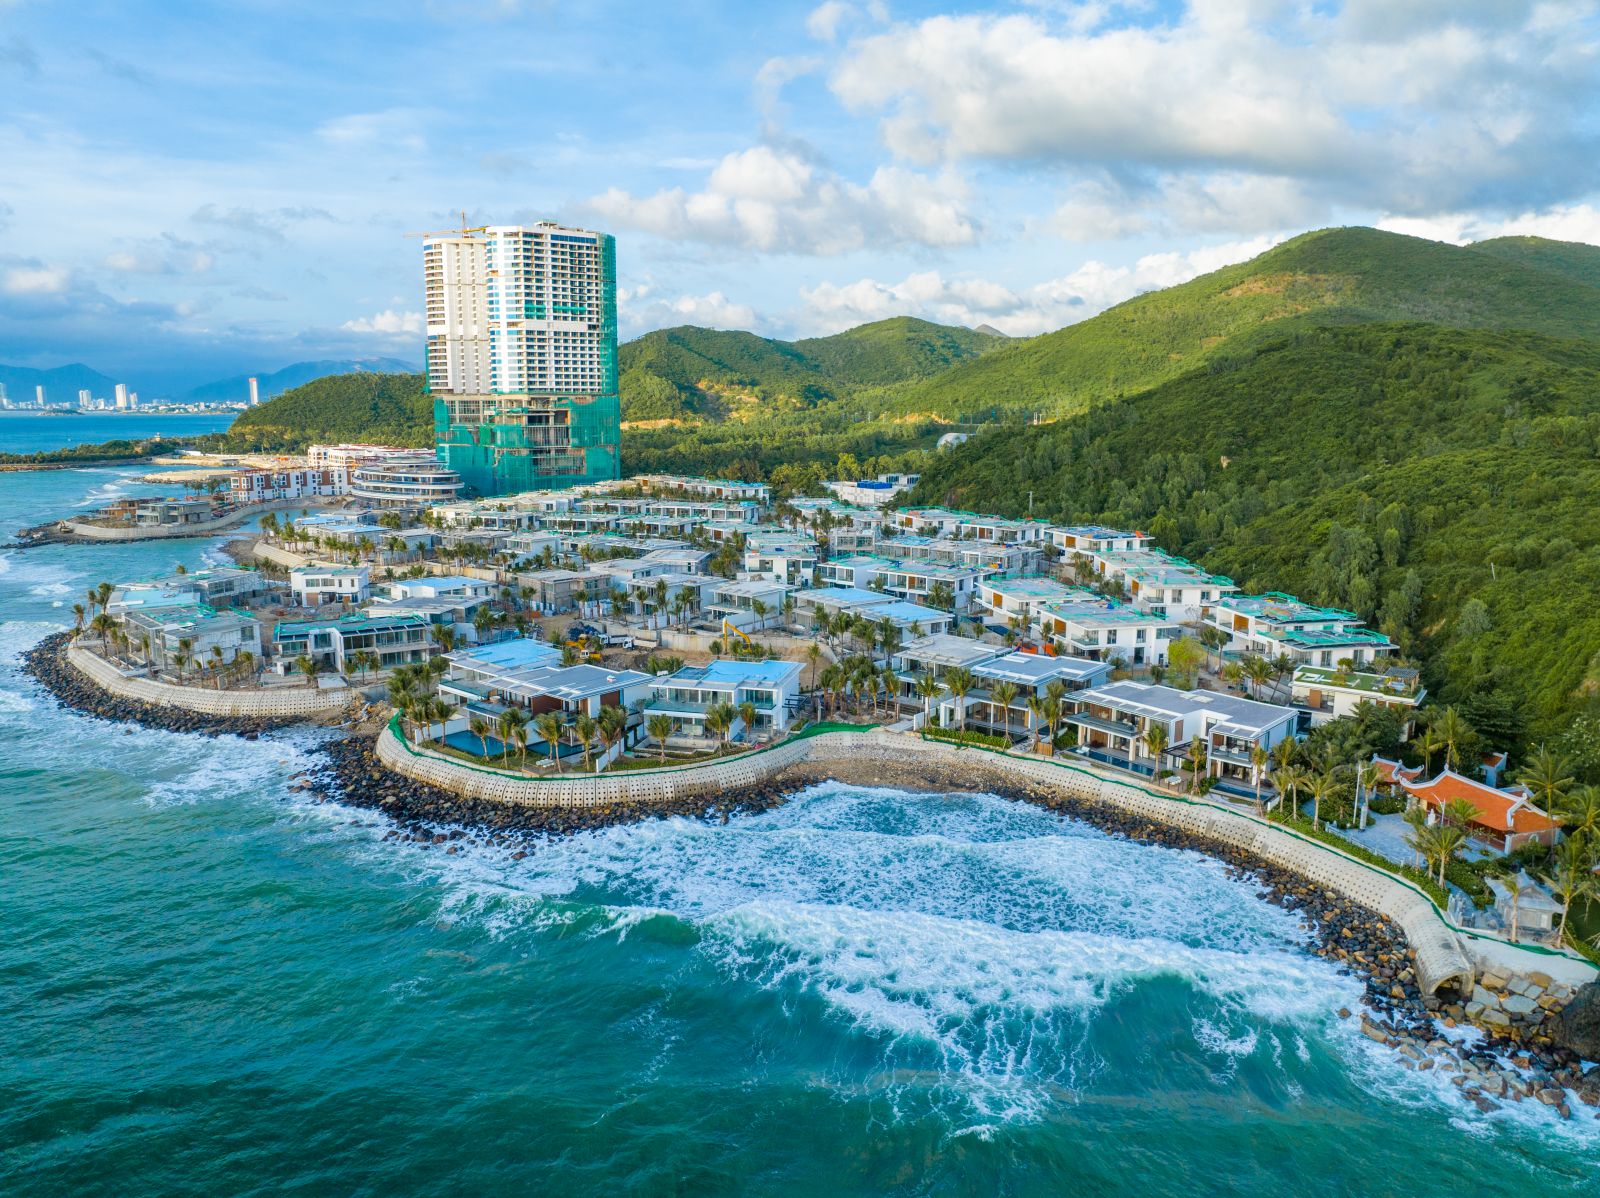 Khu nghỉ dưỡng đẳng cấp ven biển đặc biệt thu hút khách du lịch, đặc biệt là du khách nước ngoài.